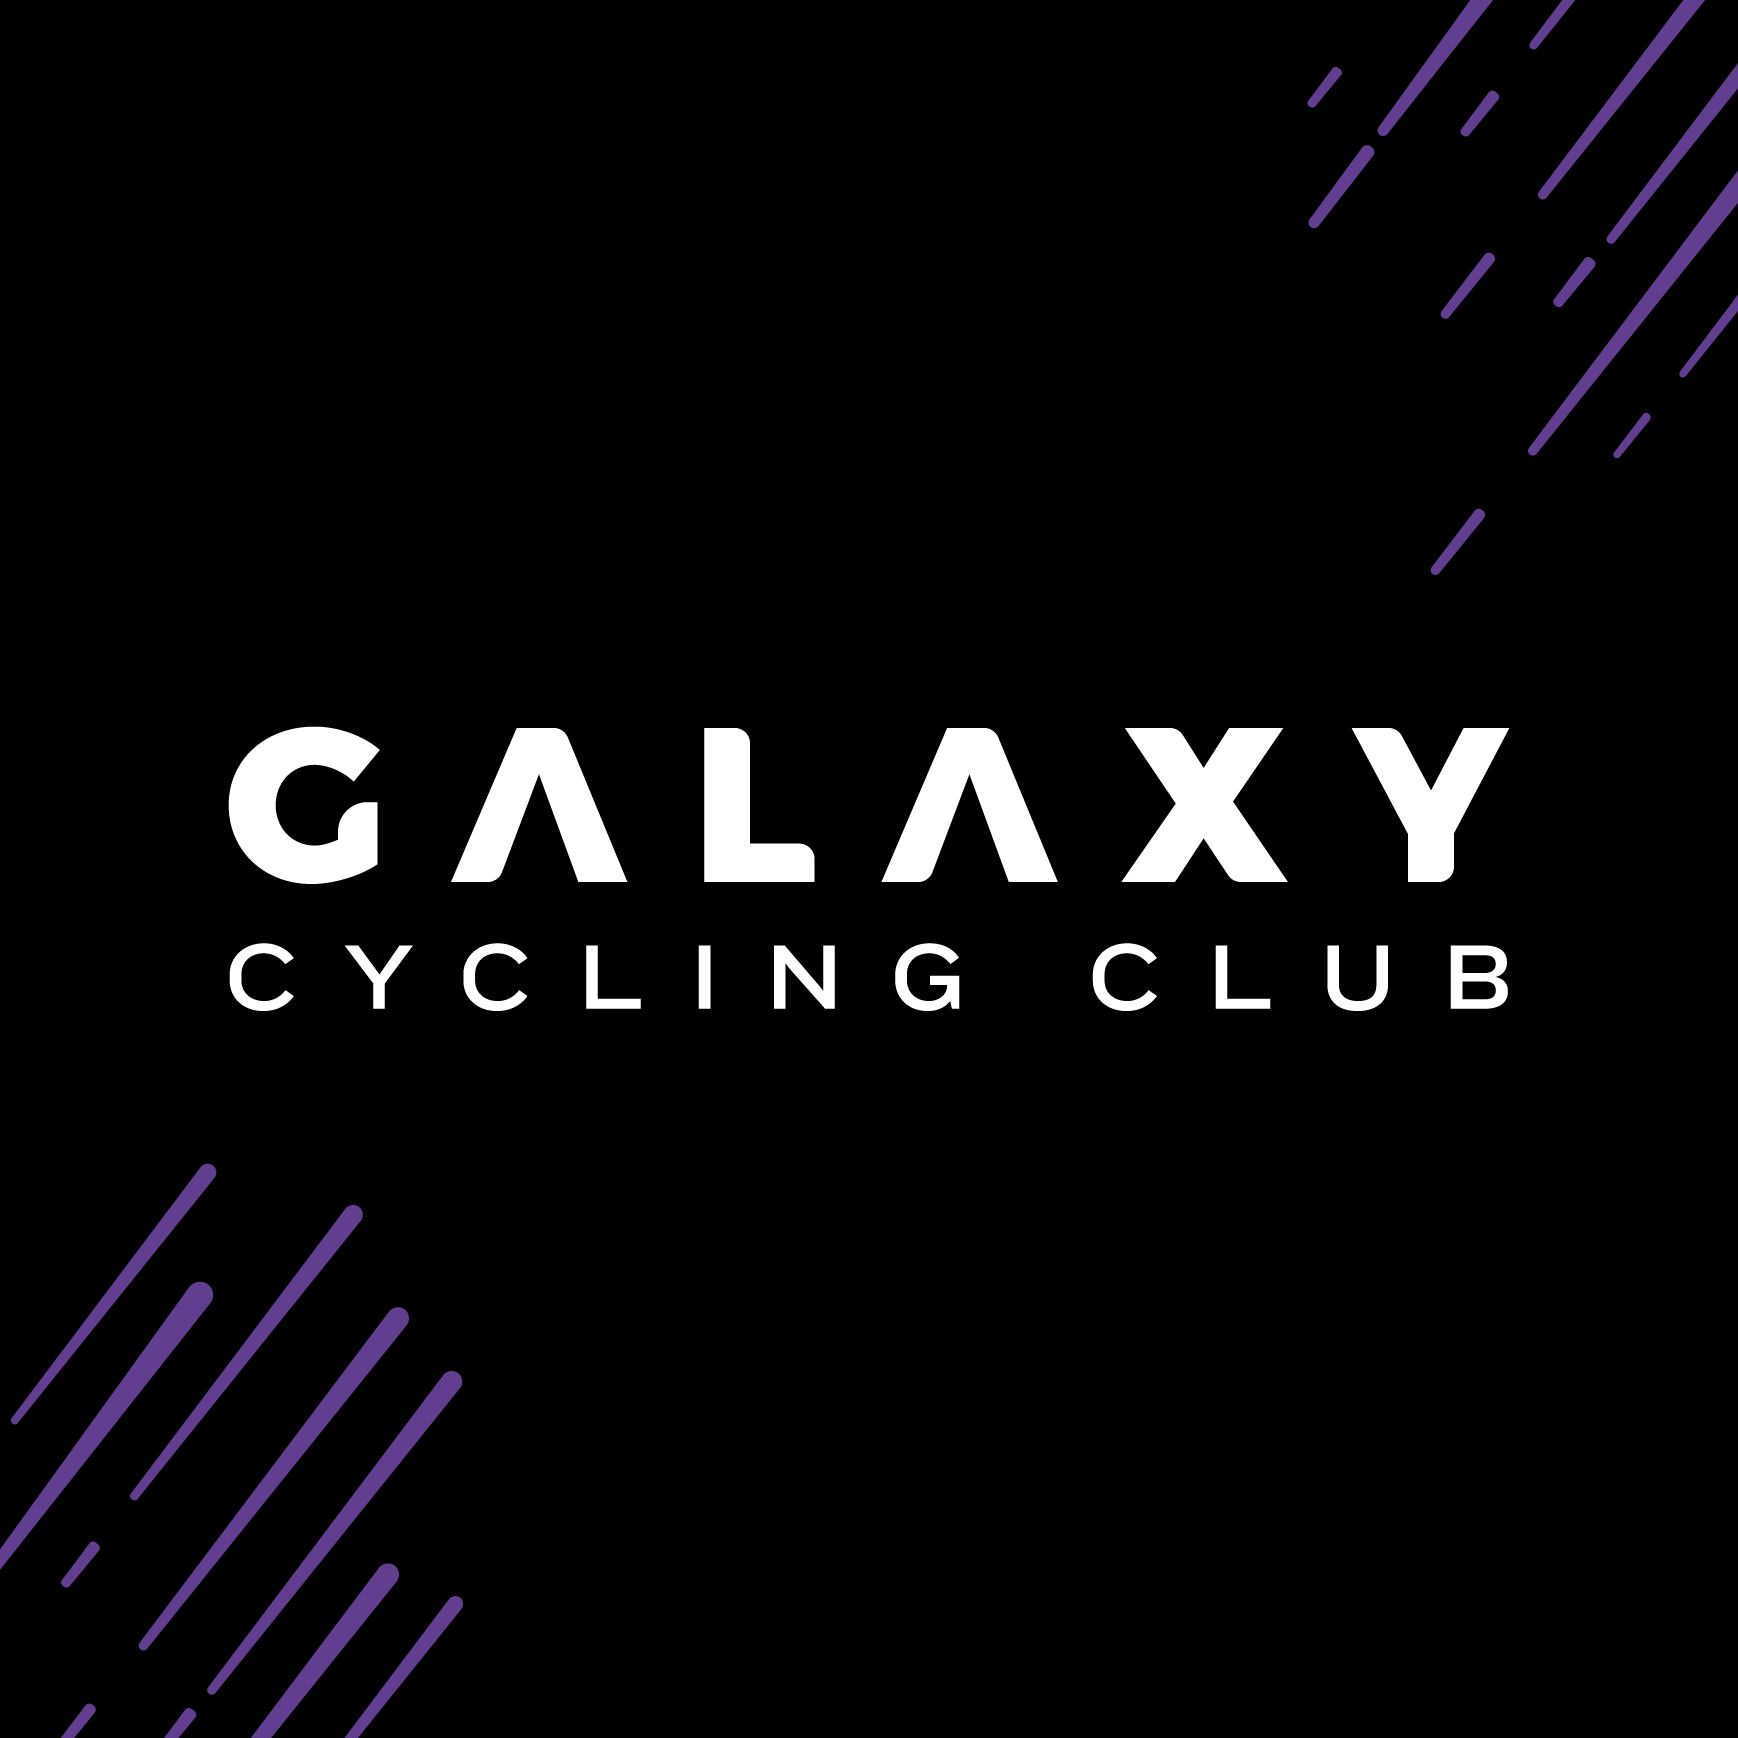 Club Image for GALAXY CYCLING CLUB